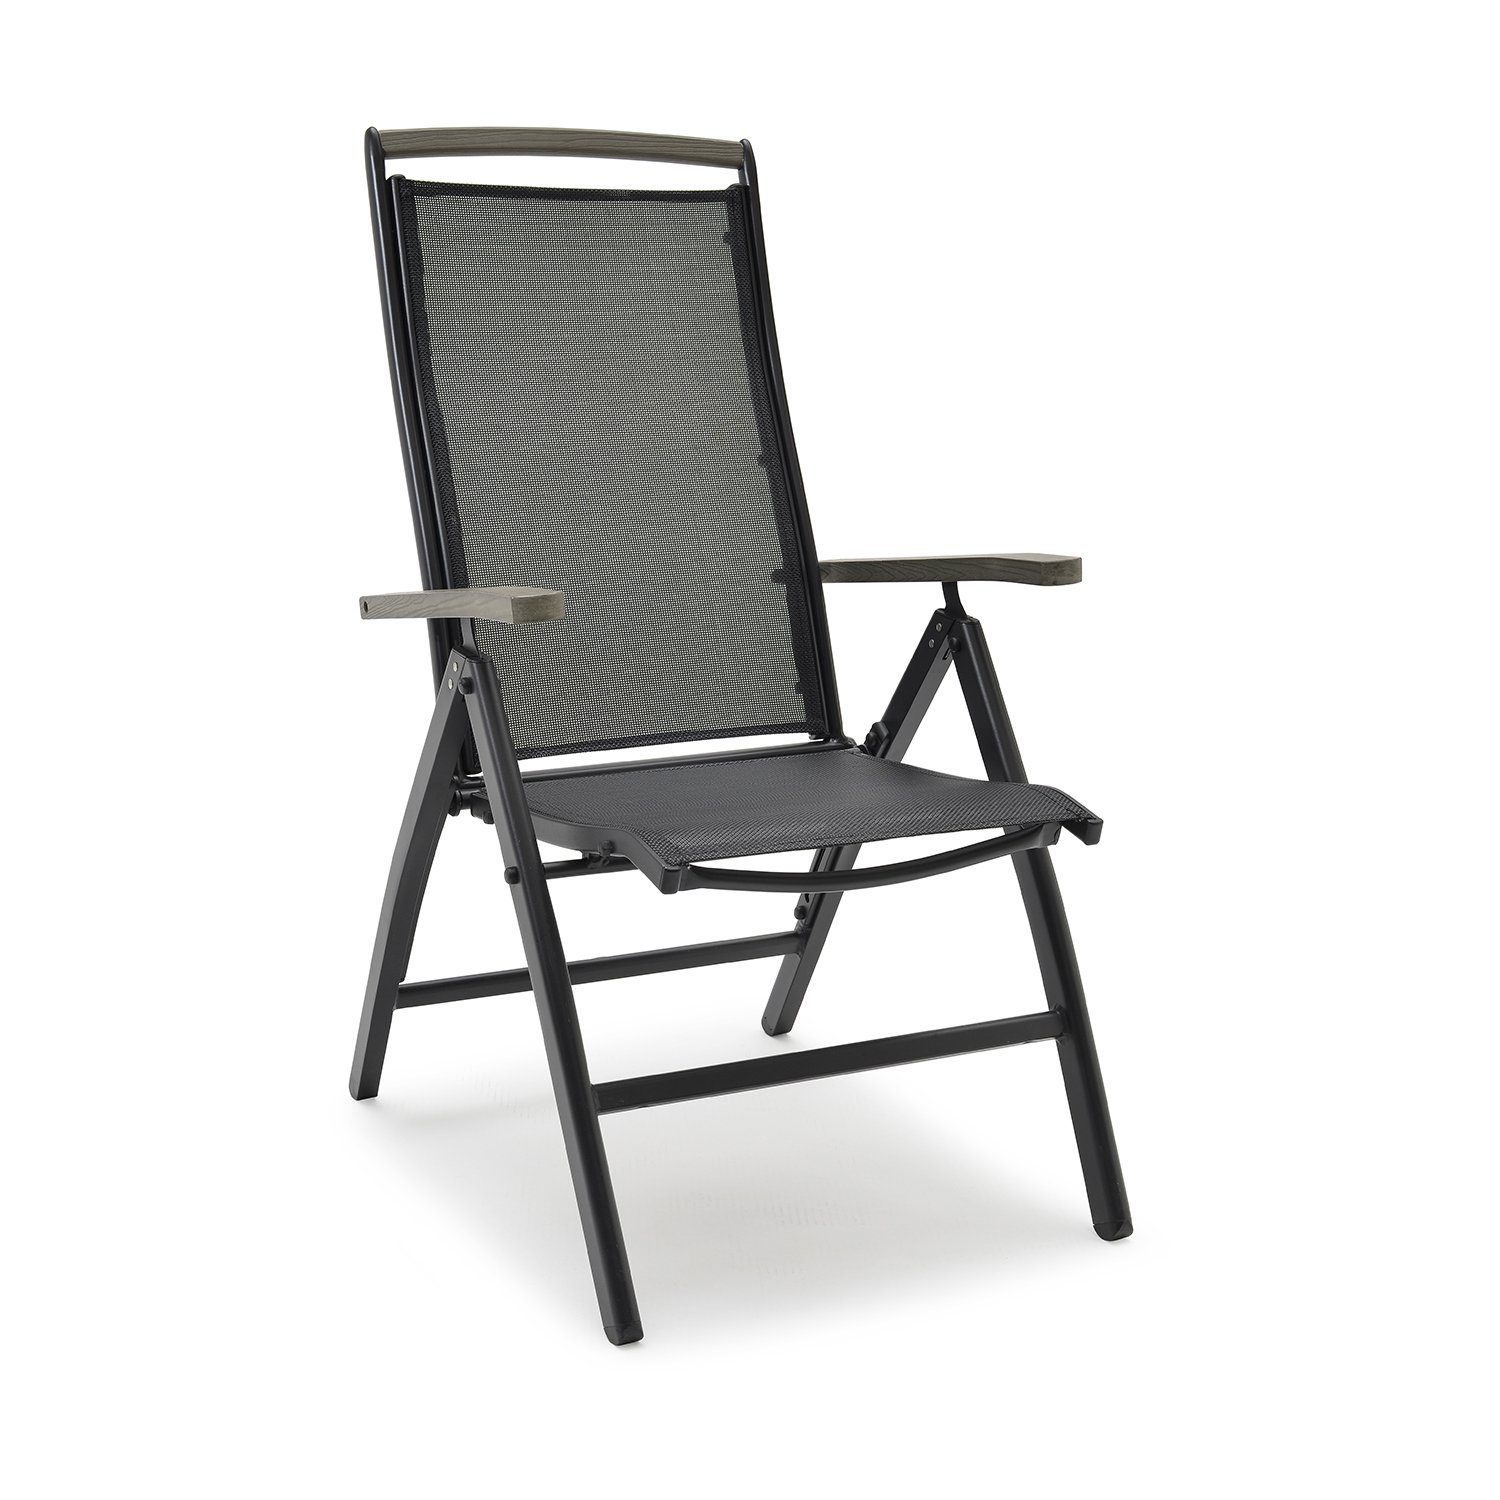 Nydala positionsstol från Hillerstorp tillverkad i aluminium och textilene med armstöd i guamo.